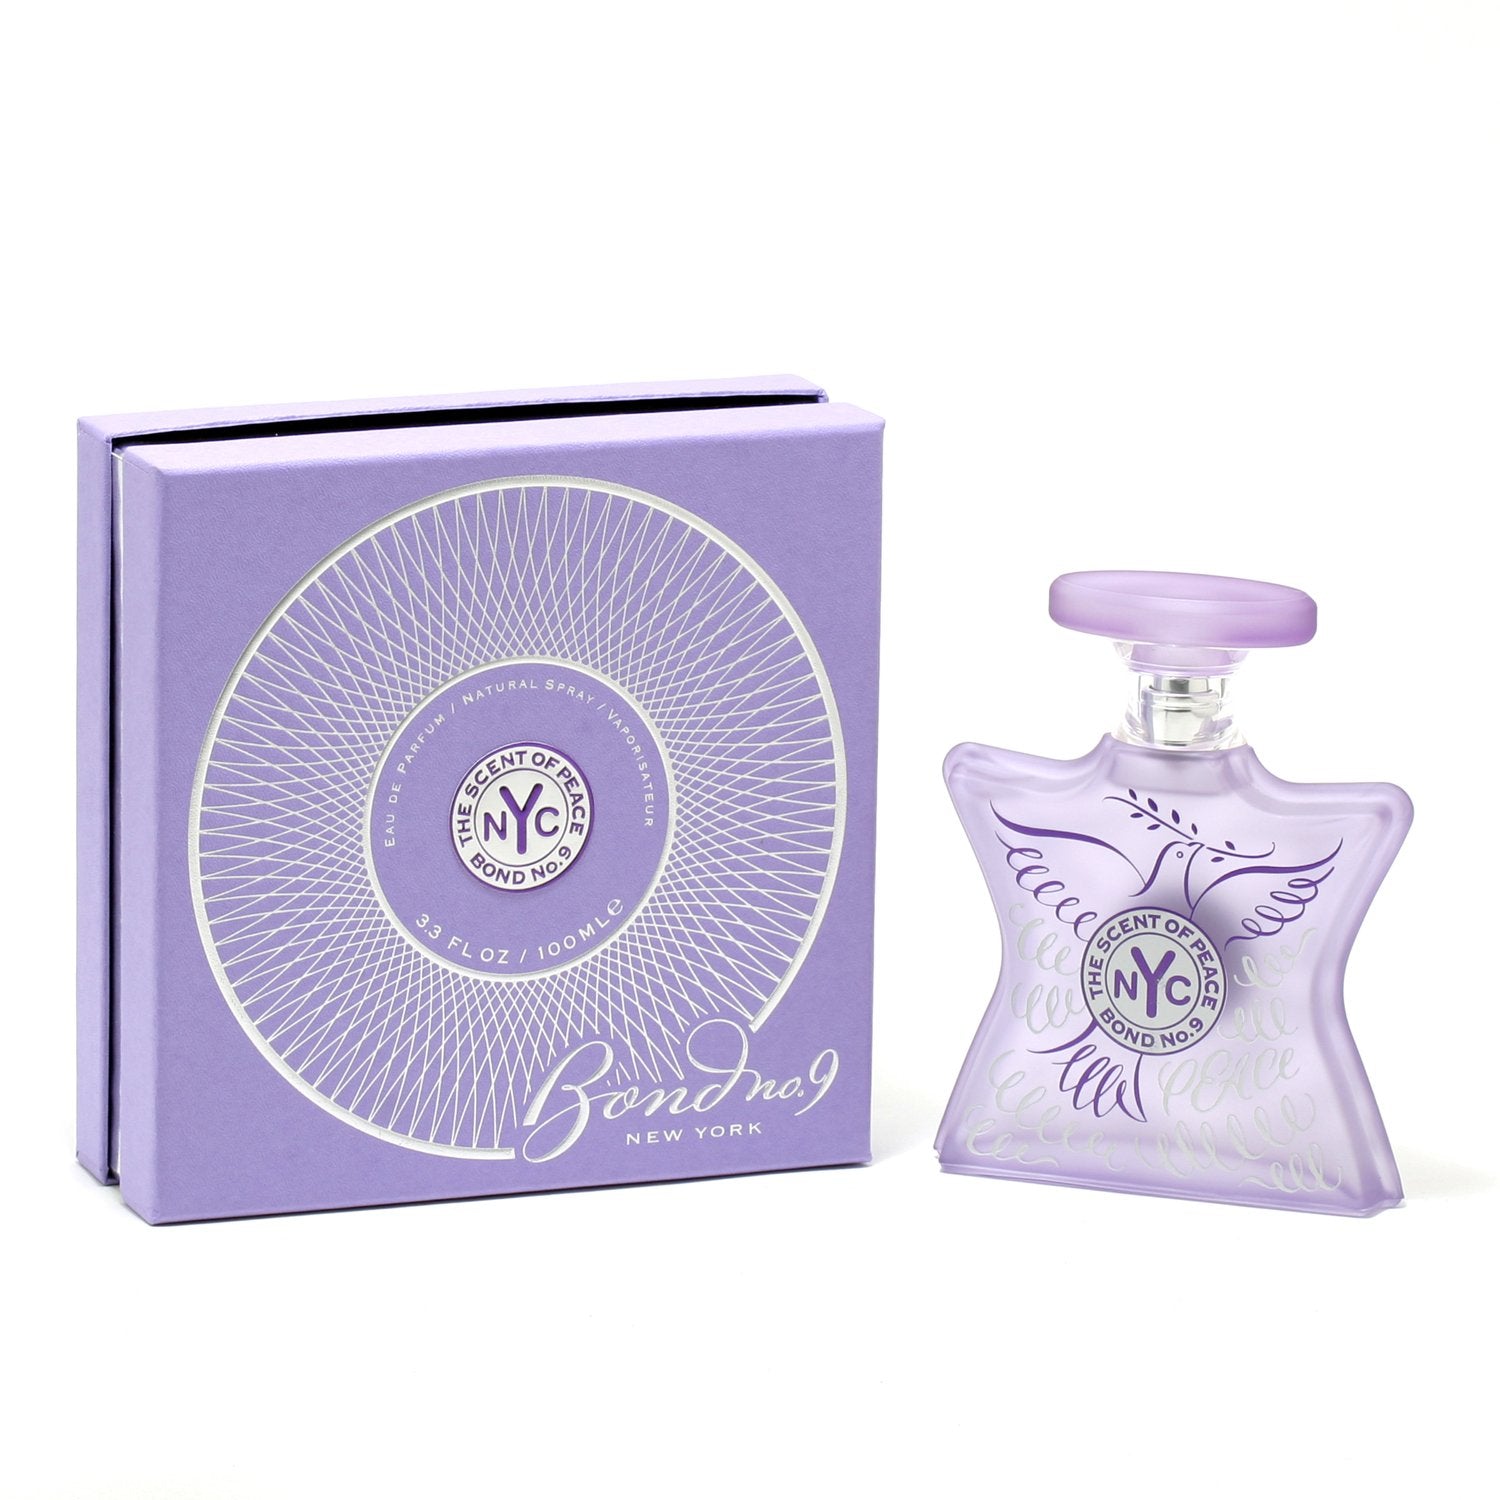 Perfume - BOND NO 9 THE SCENT OF PEACE FOR WOMEN - EAU DE PARFUM SPRAY, 3.3 OZ